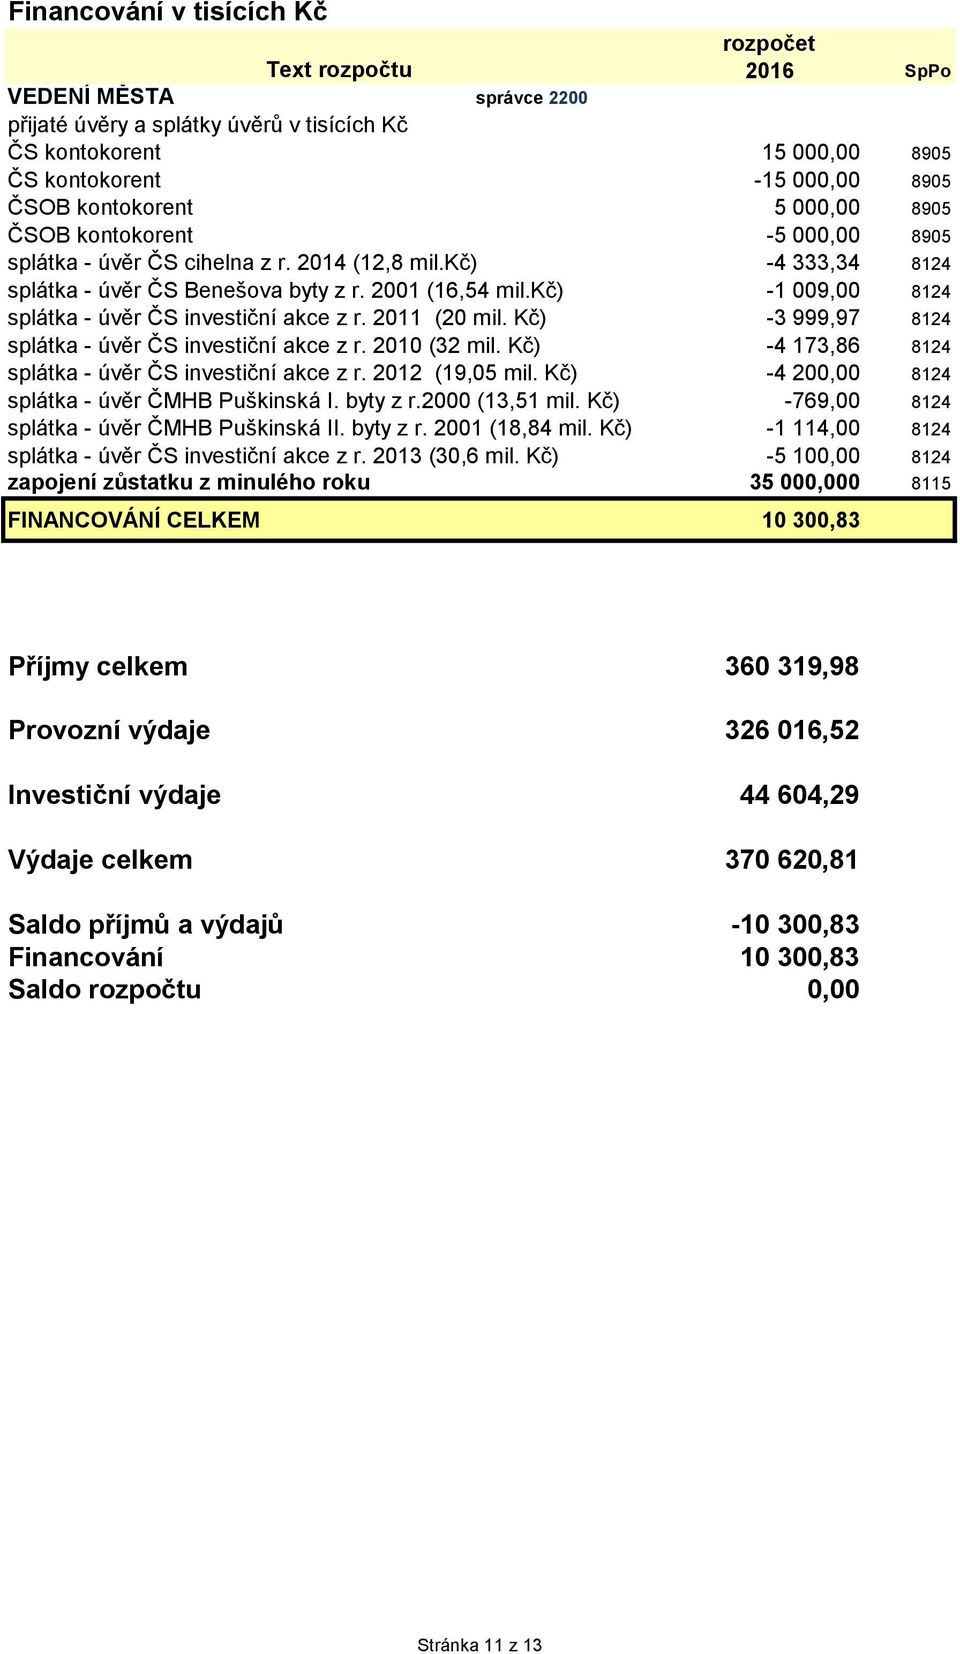 kč) -1 009,00 8124 splátka - úvěr ČS investiční akce z r. 2011 (20 mil. Kč) -3 999,97 8124 splátka - úvěr ČS investiční akce z r. 2010 (32 mil.